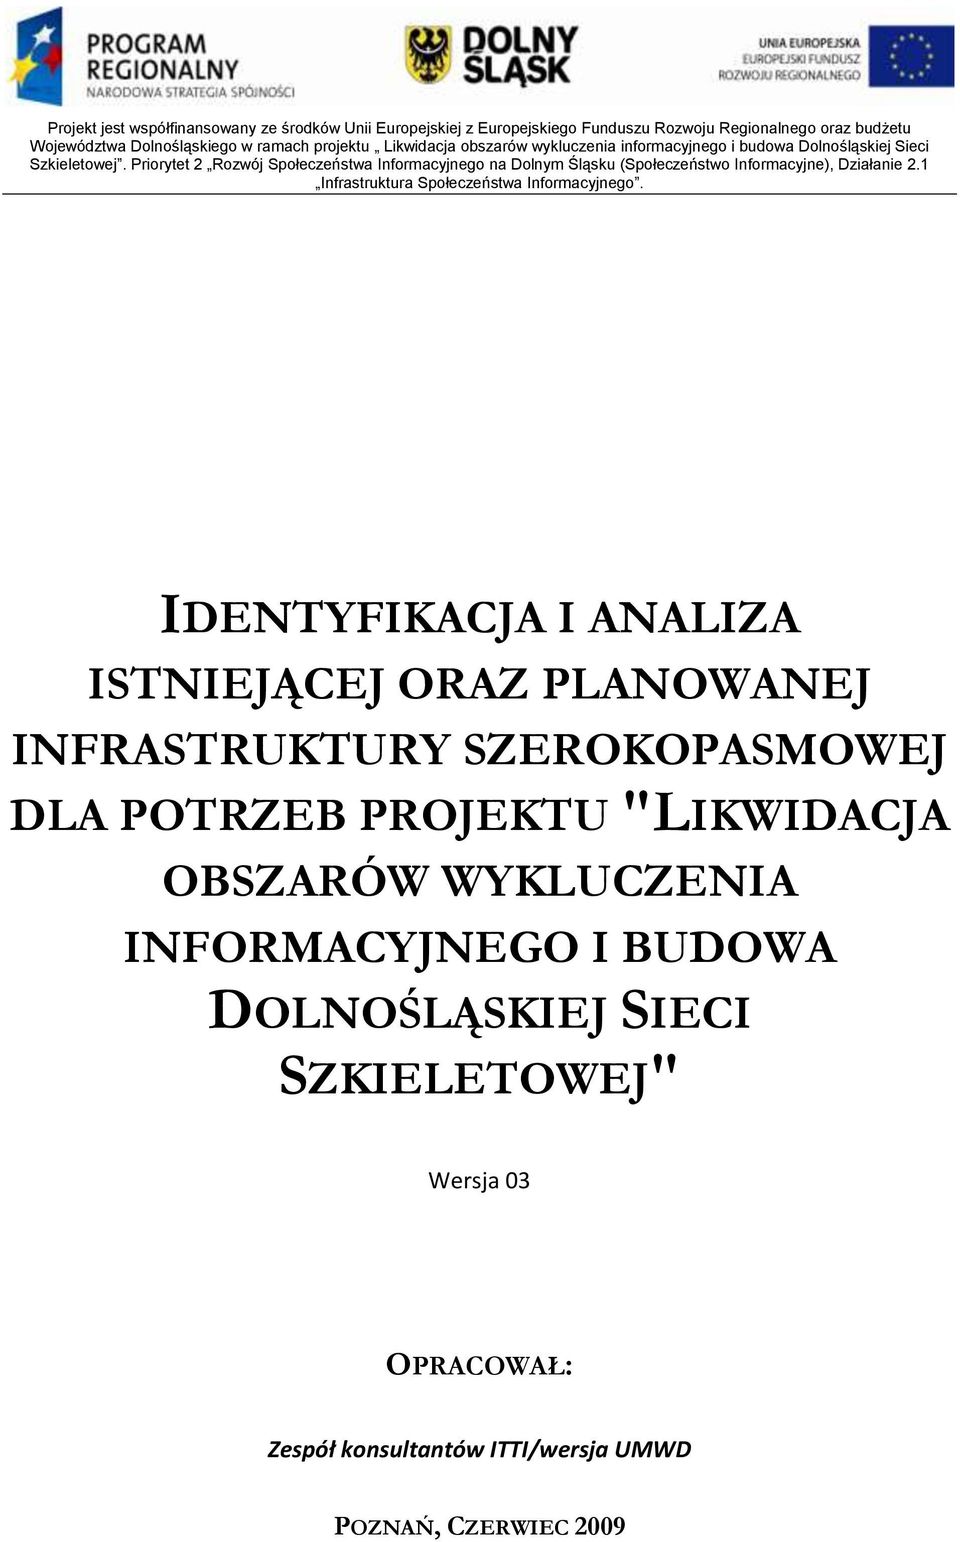 Priorytet 2 Rozwój Społeczeństwa Informacyjnego na Dolnym Śląsku (Społeczeństwo Informacyjne), Działanie 2.1 Infrastruktura Społeczeństwa Informacyjnego.